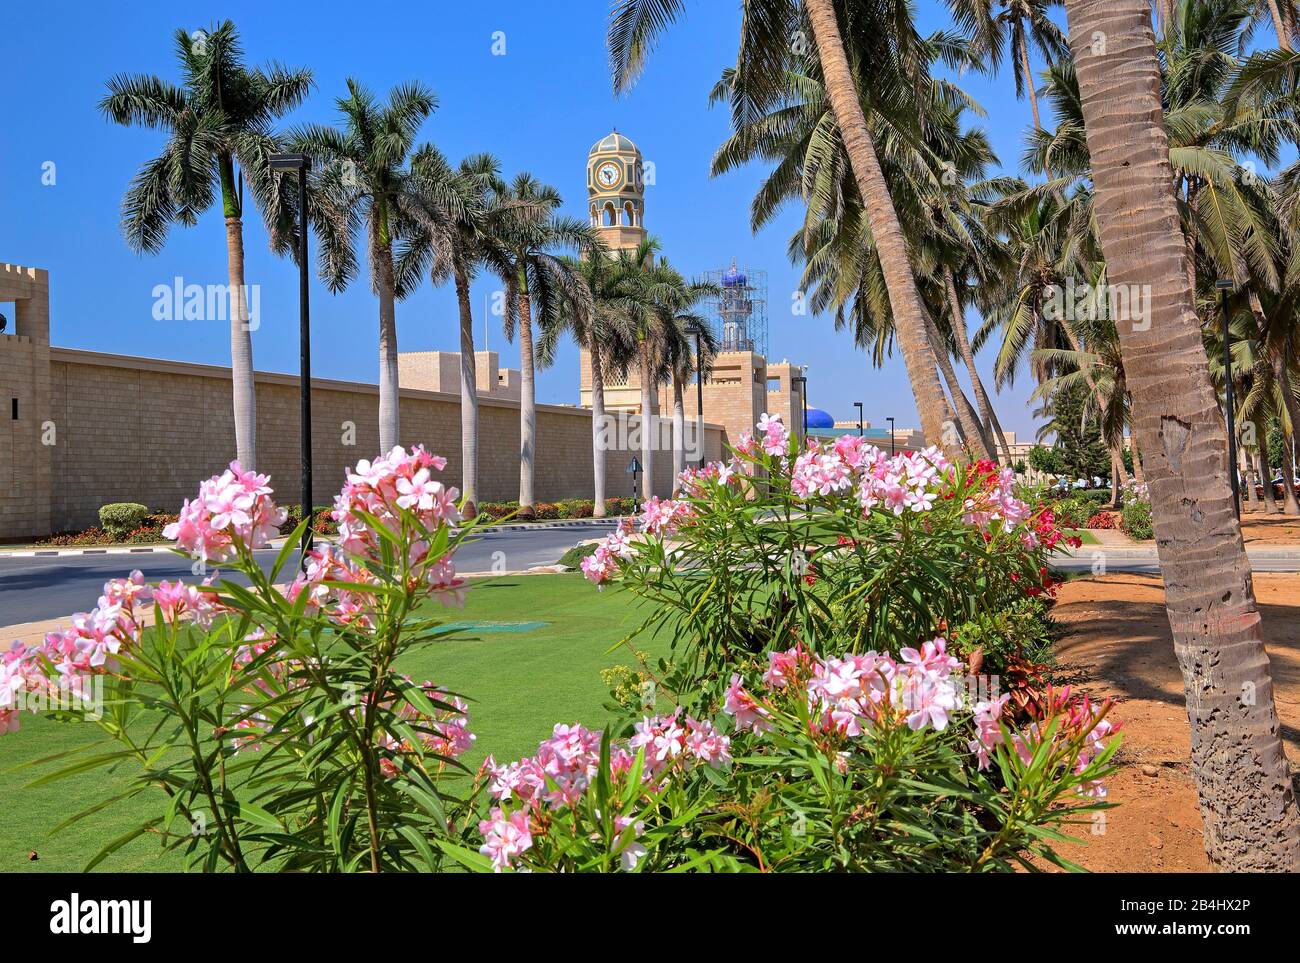 Palmiers avec mur de palais et tour d'horloge du palais sultan, Salalah, mer d'Arabie, Oman Banque D'Images